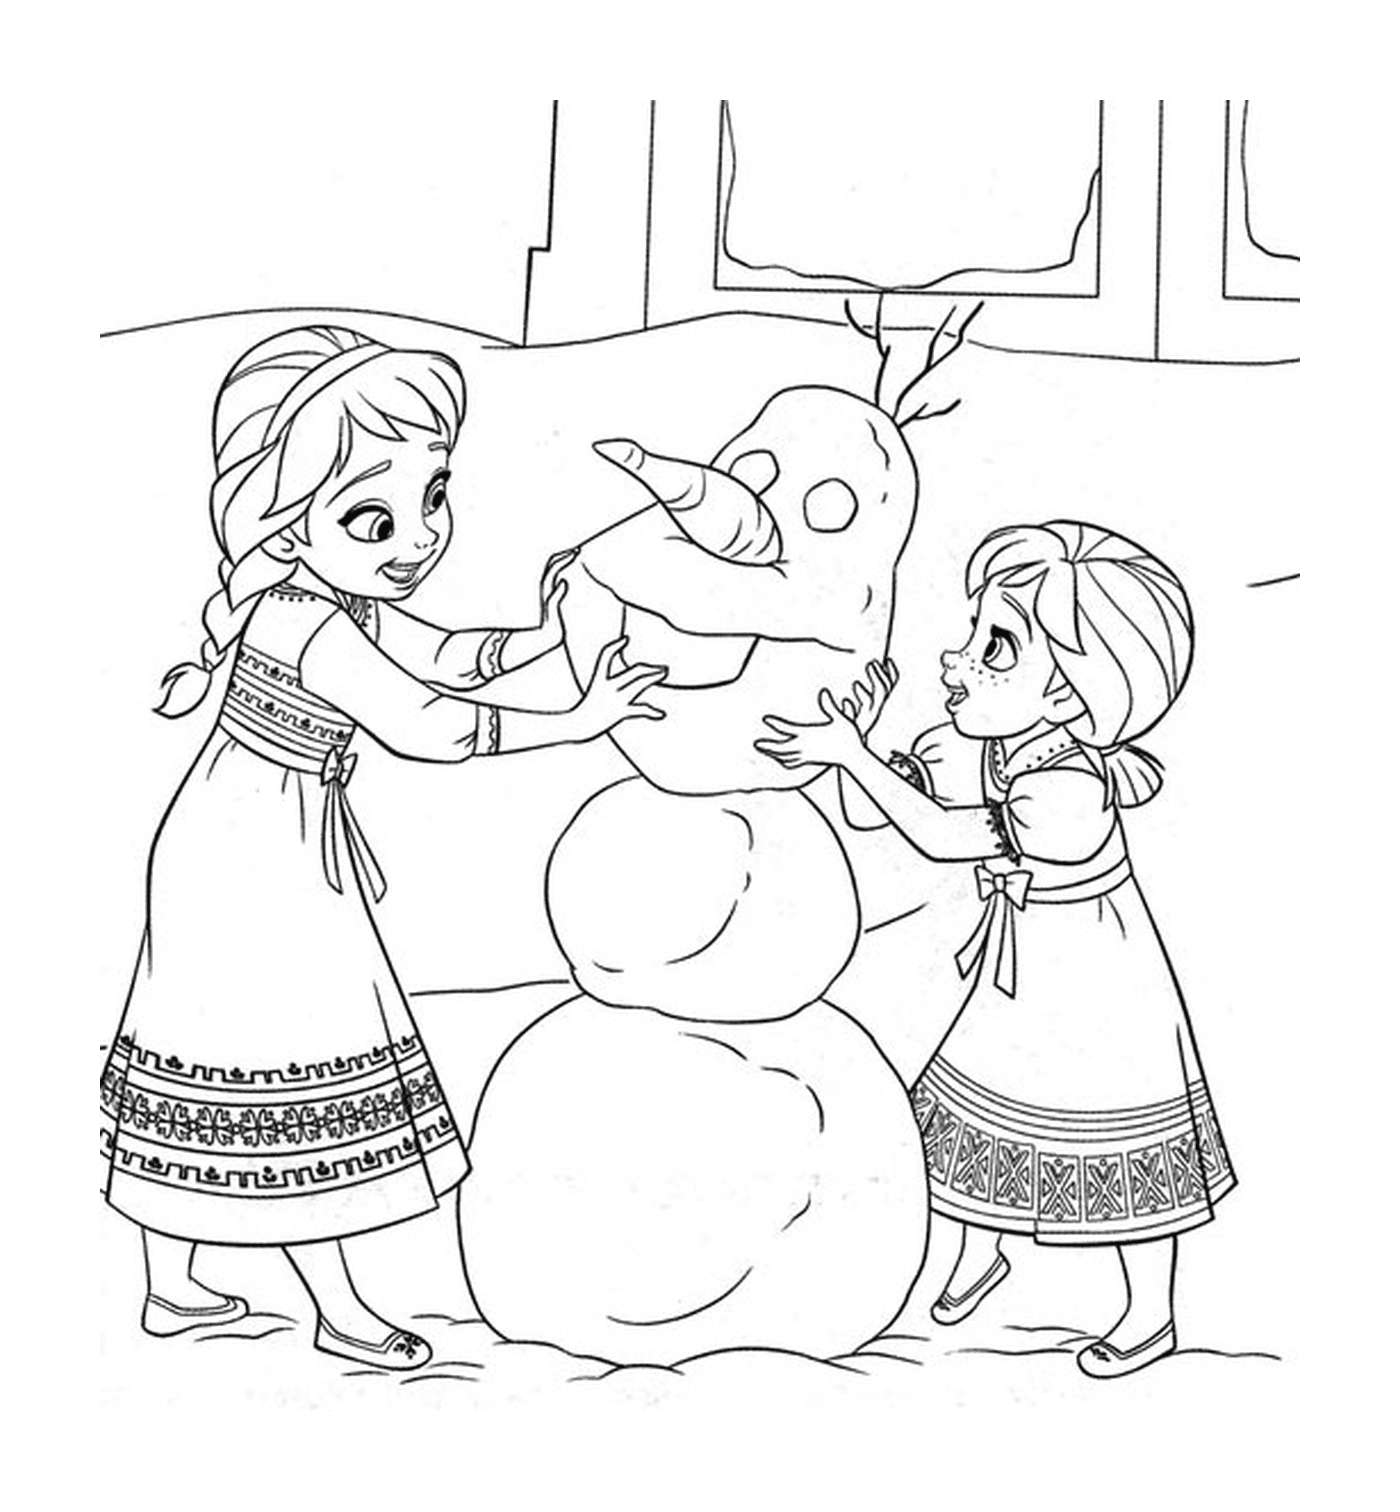  Zwei kleine Mädchen bauen zusammen einen Schneemann 